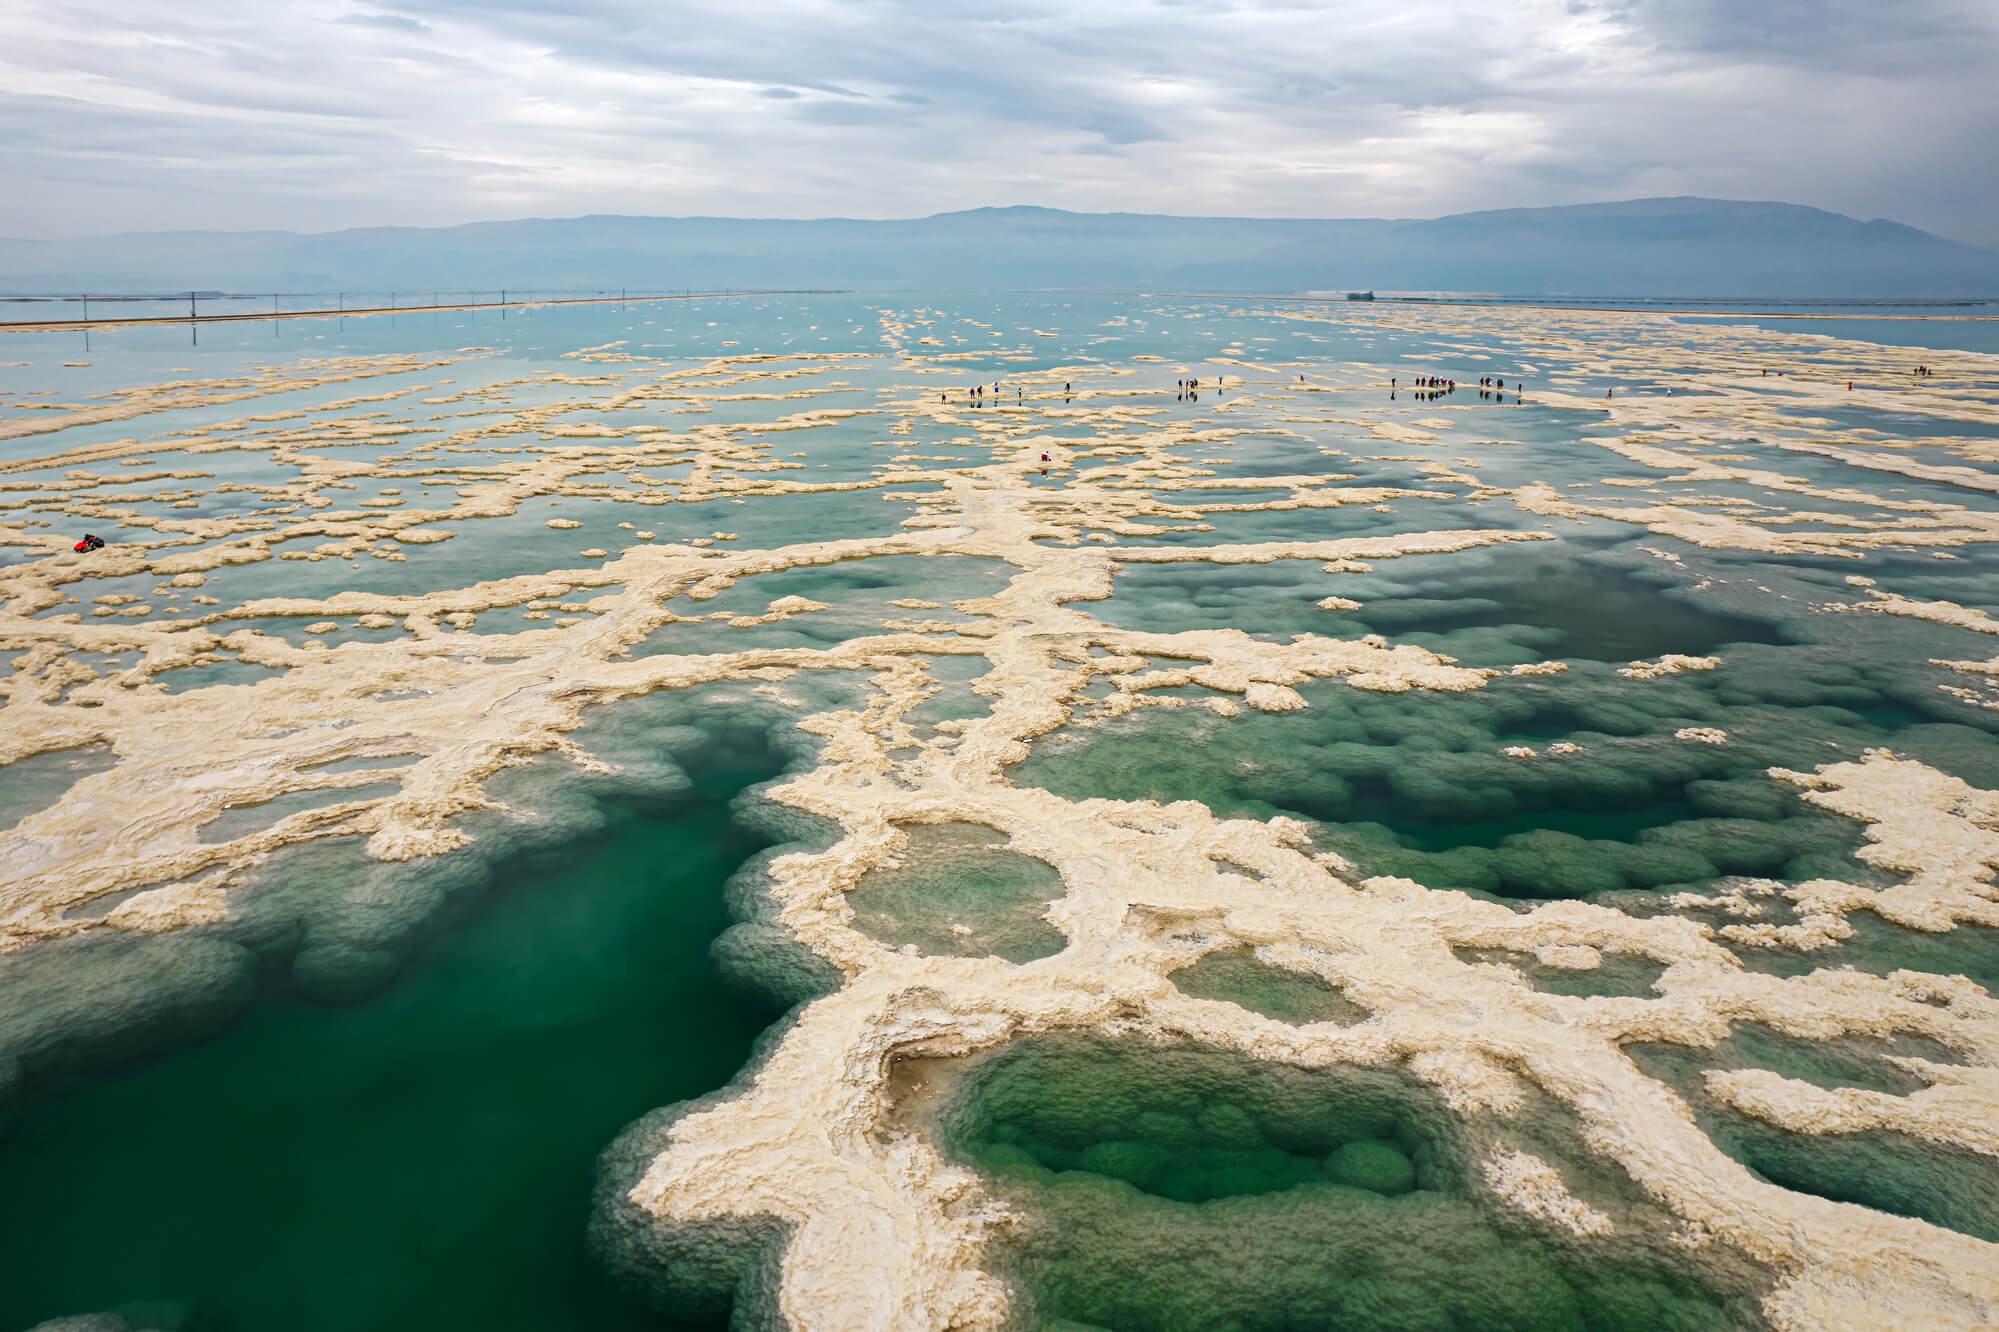 צילום מרחפן של ים המלח המתייבש. <a href="https://depositphotos.com. ">איור: depositphotos.com</a>